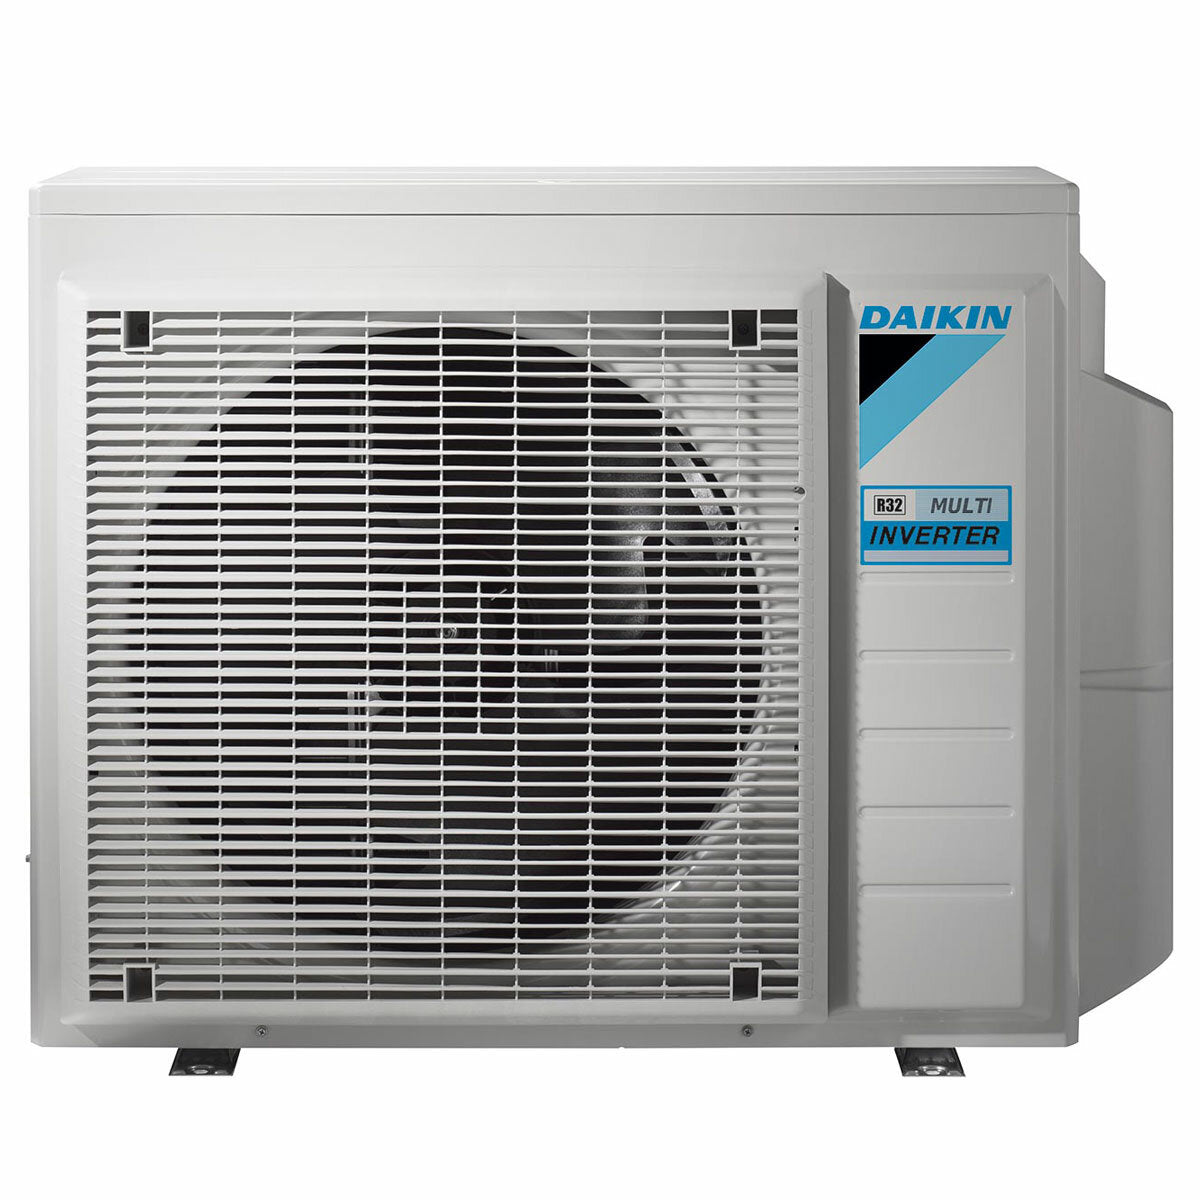 Daikin Emura air conditioner 3 split panels 7000+7000+9000+18000 BTU inverter A++ wifi outdoor unit 7.4 kW Black